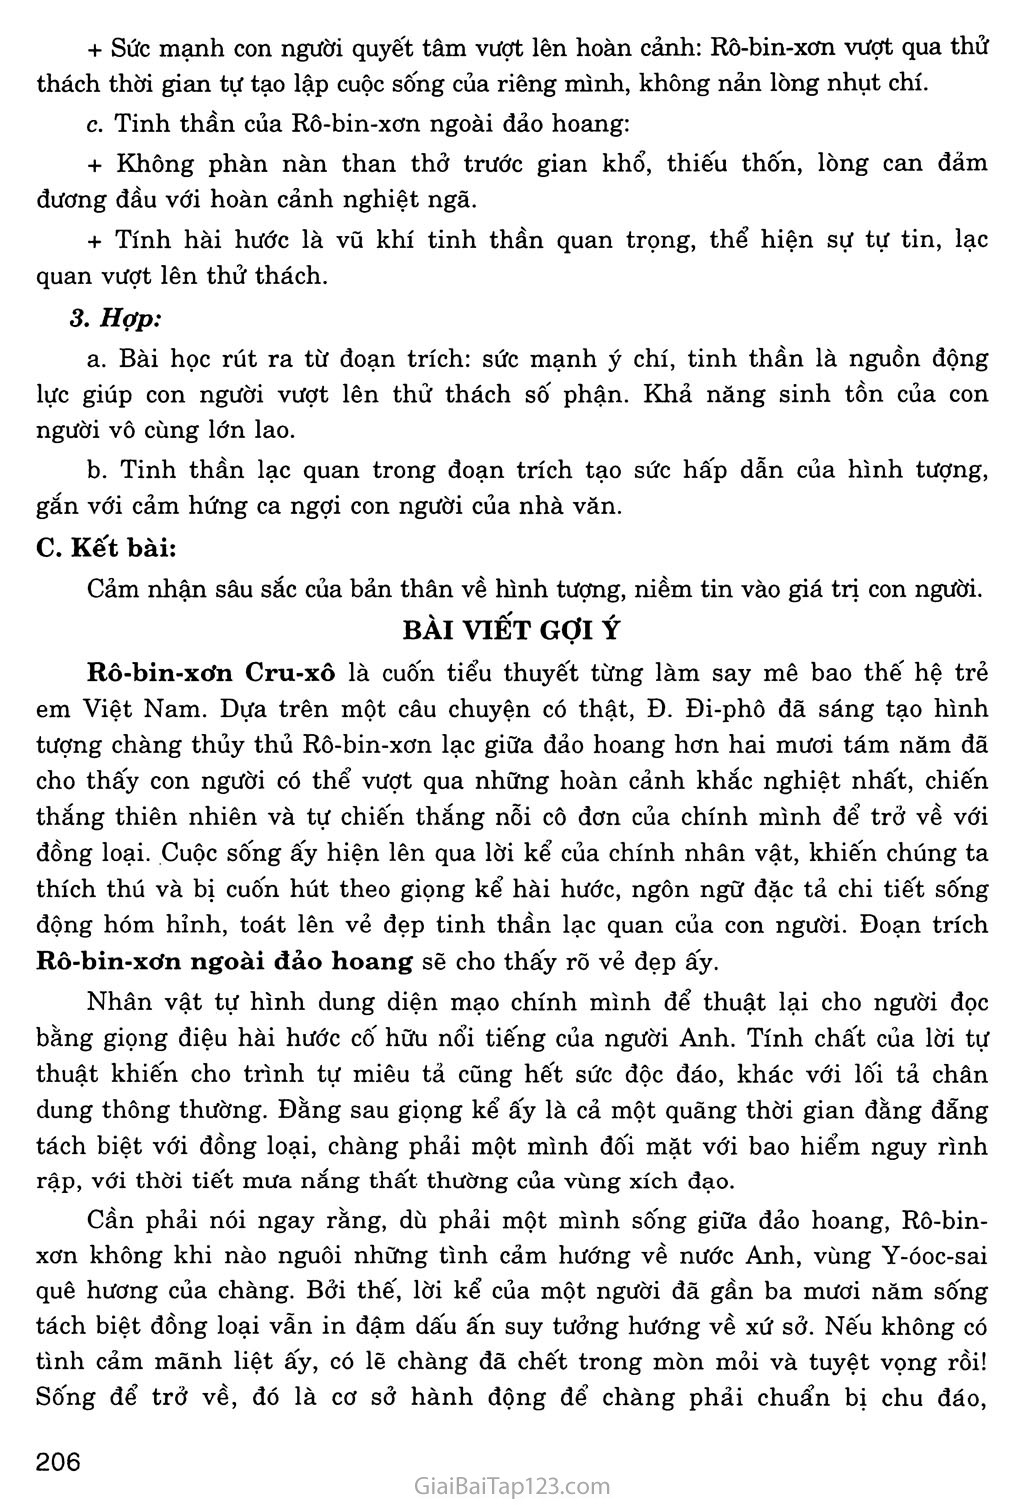 Rô - bin - xơn ngoài đảo hoang (trích Rô - bin - xơn Cru - xô) trang 5